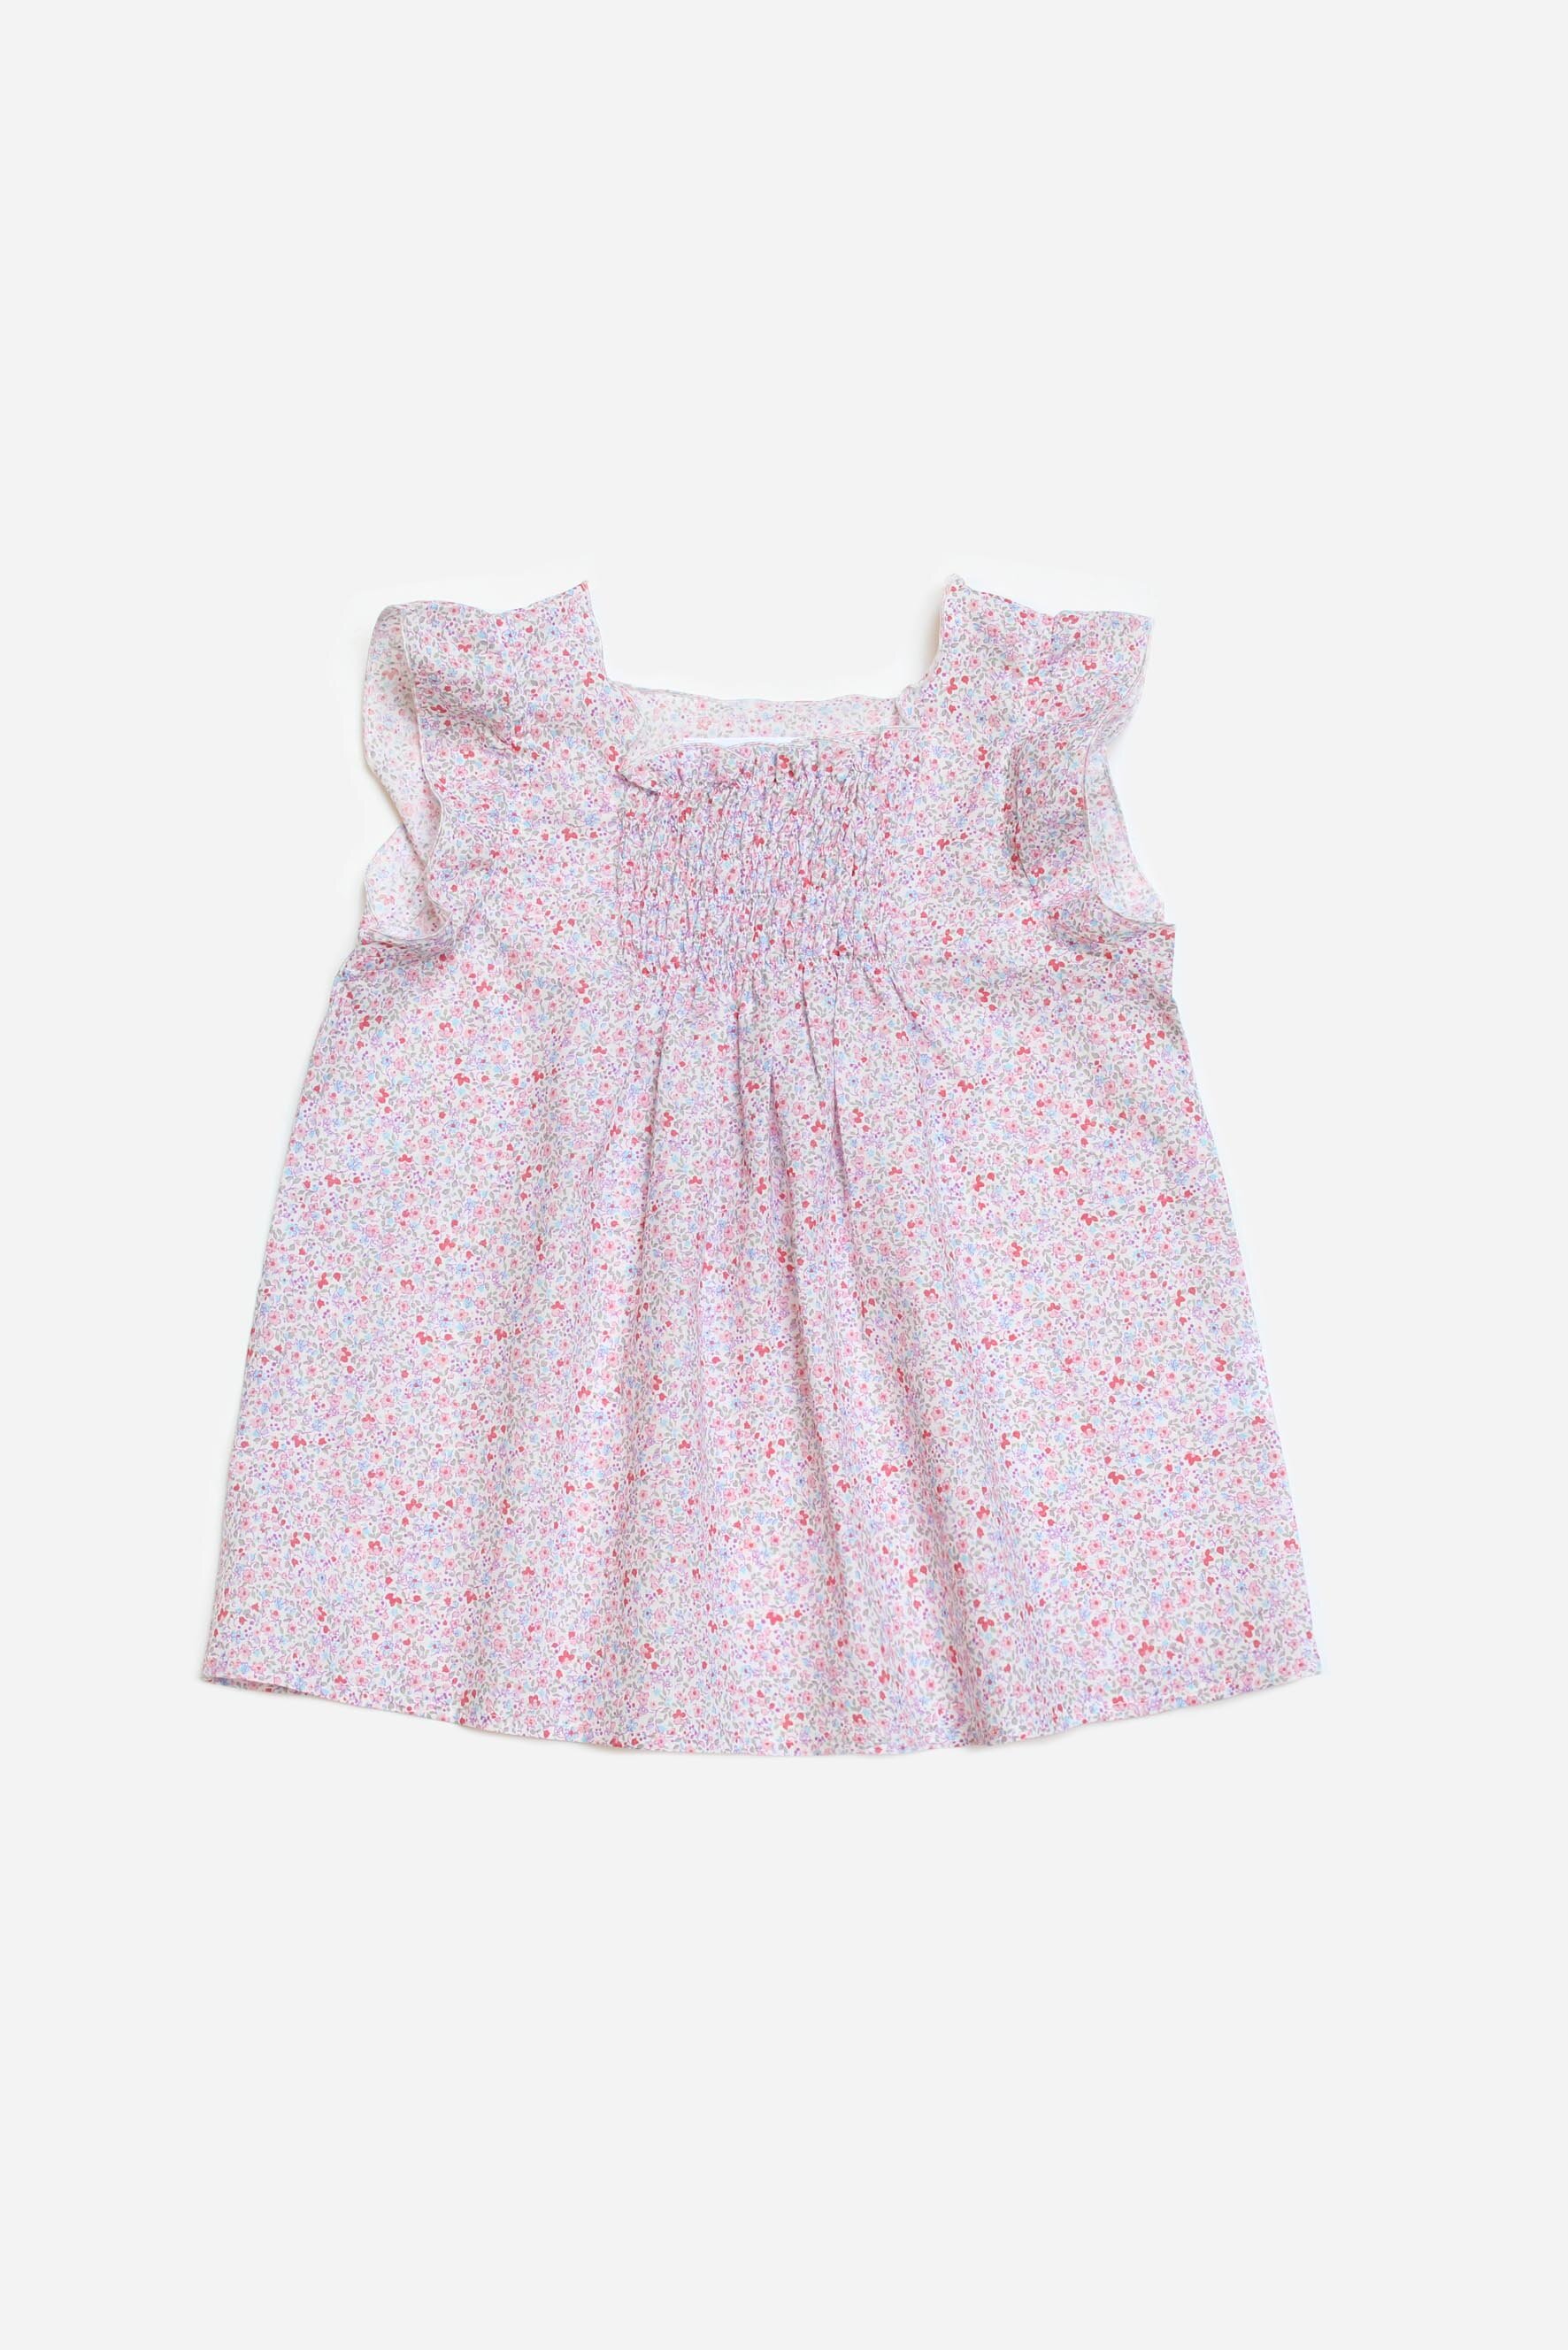 Camicia bambina elasticata a fiori rosa